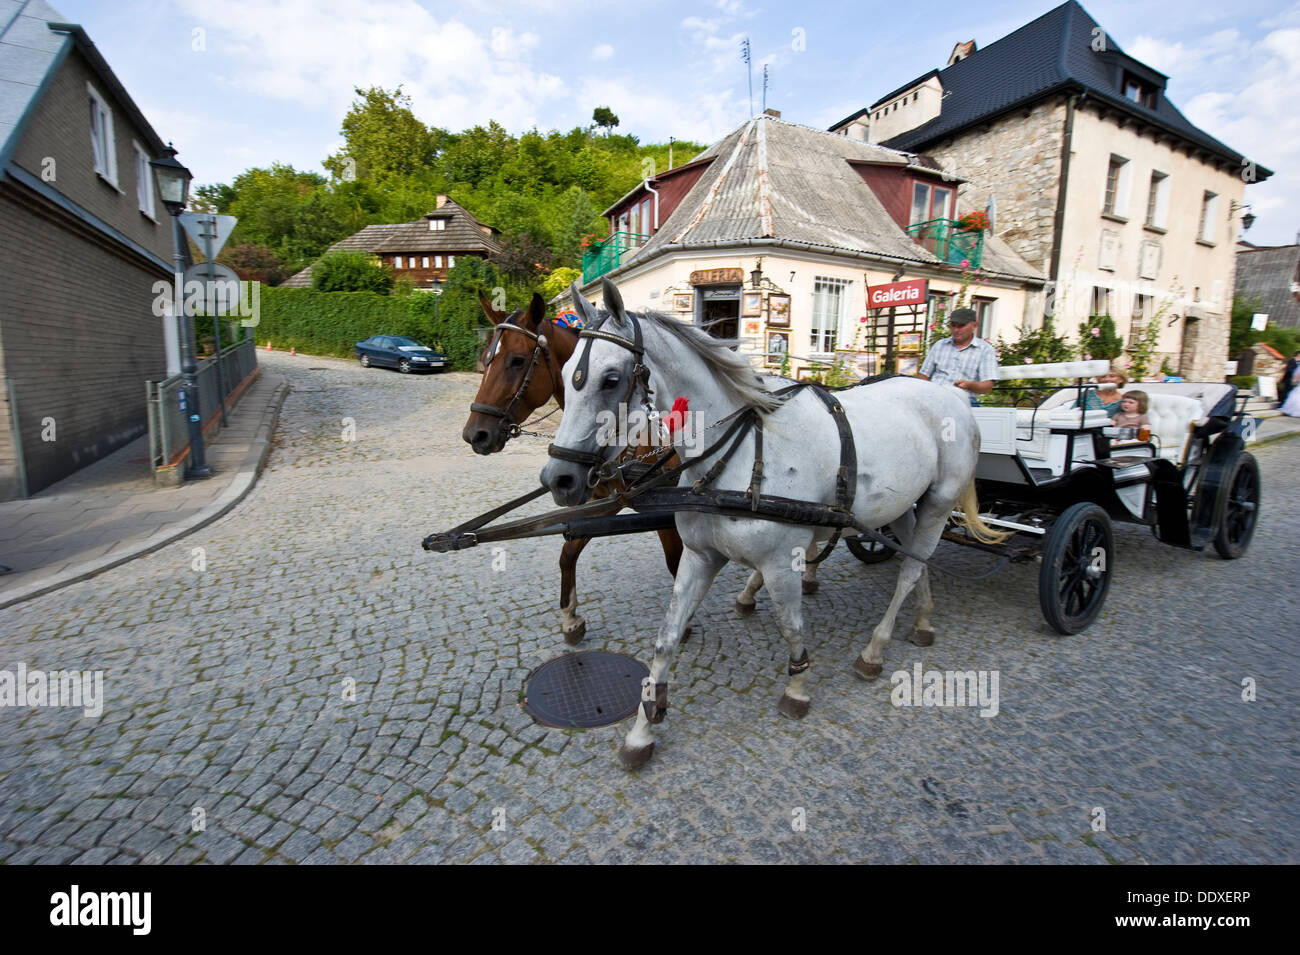 Eine Pferdekutsche für Sightseeing-Touristen in Kazimierz Dolny. Stockfoto